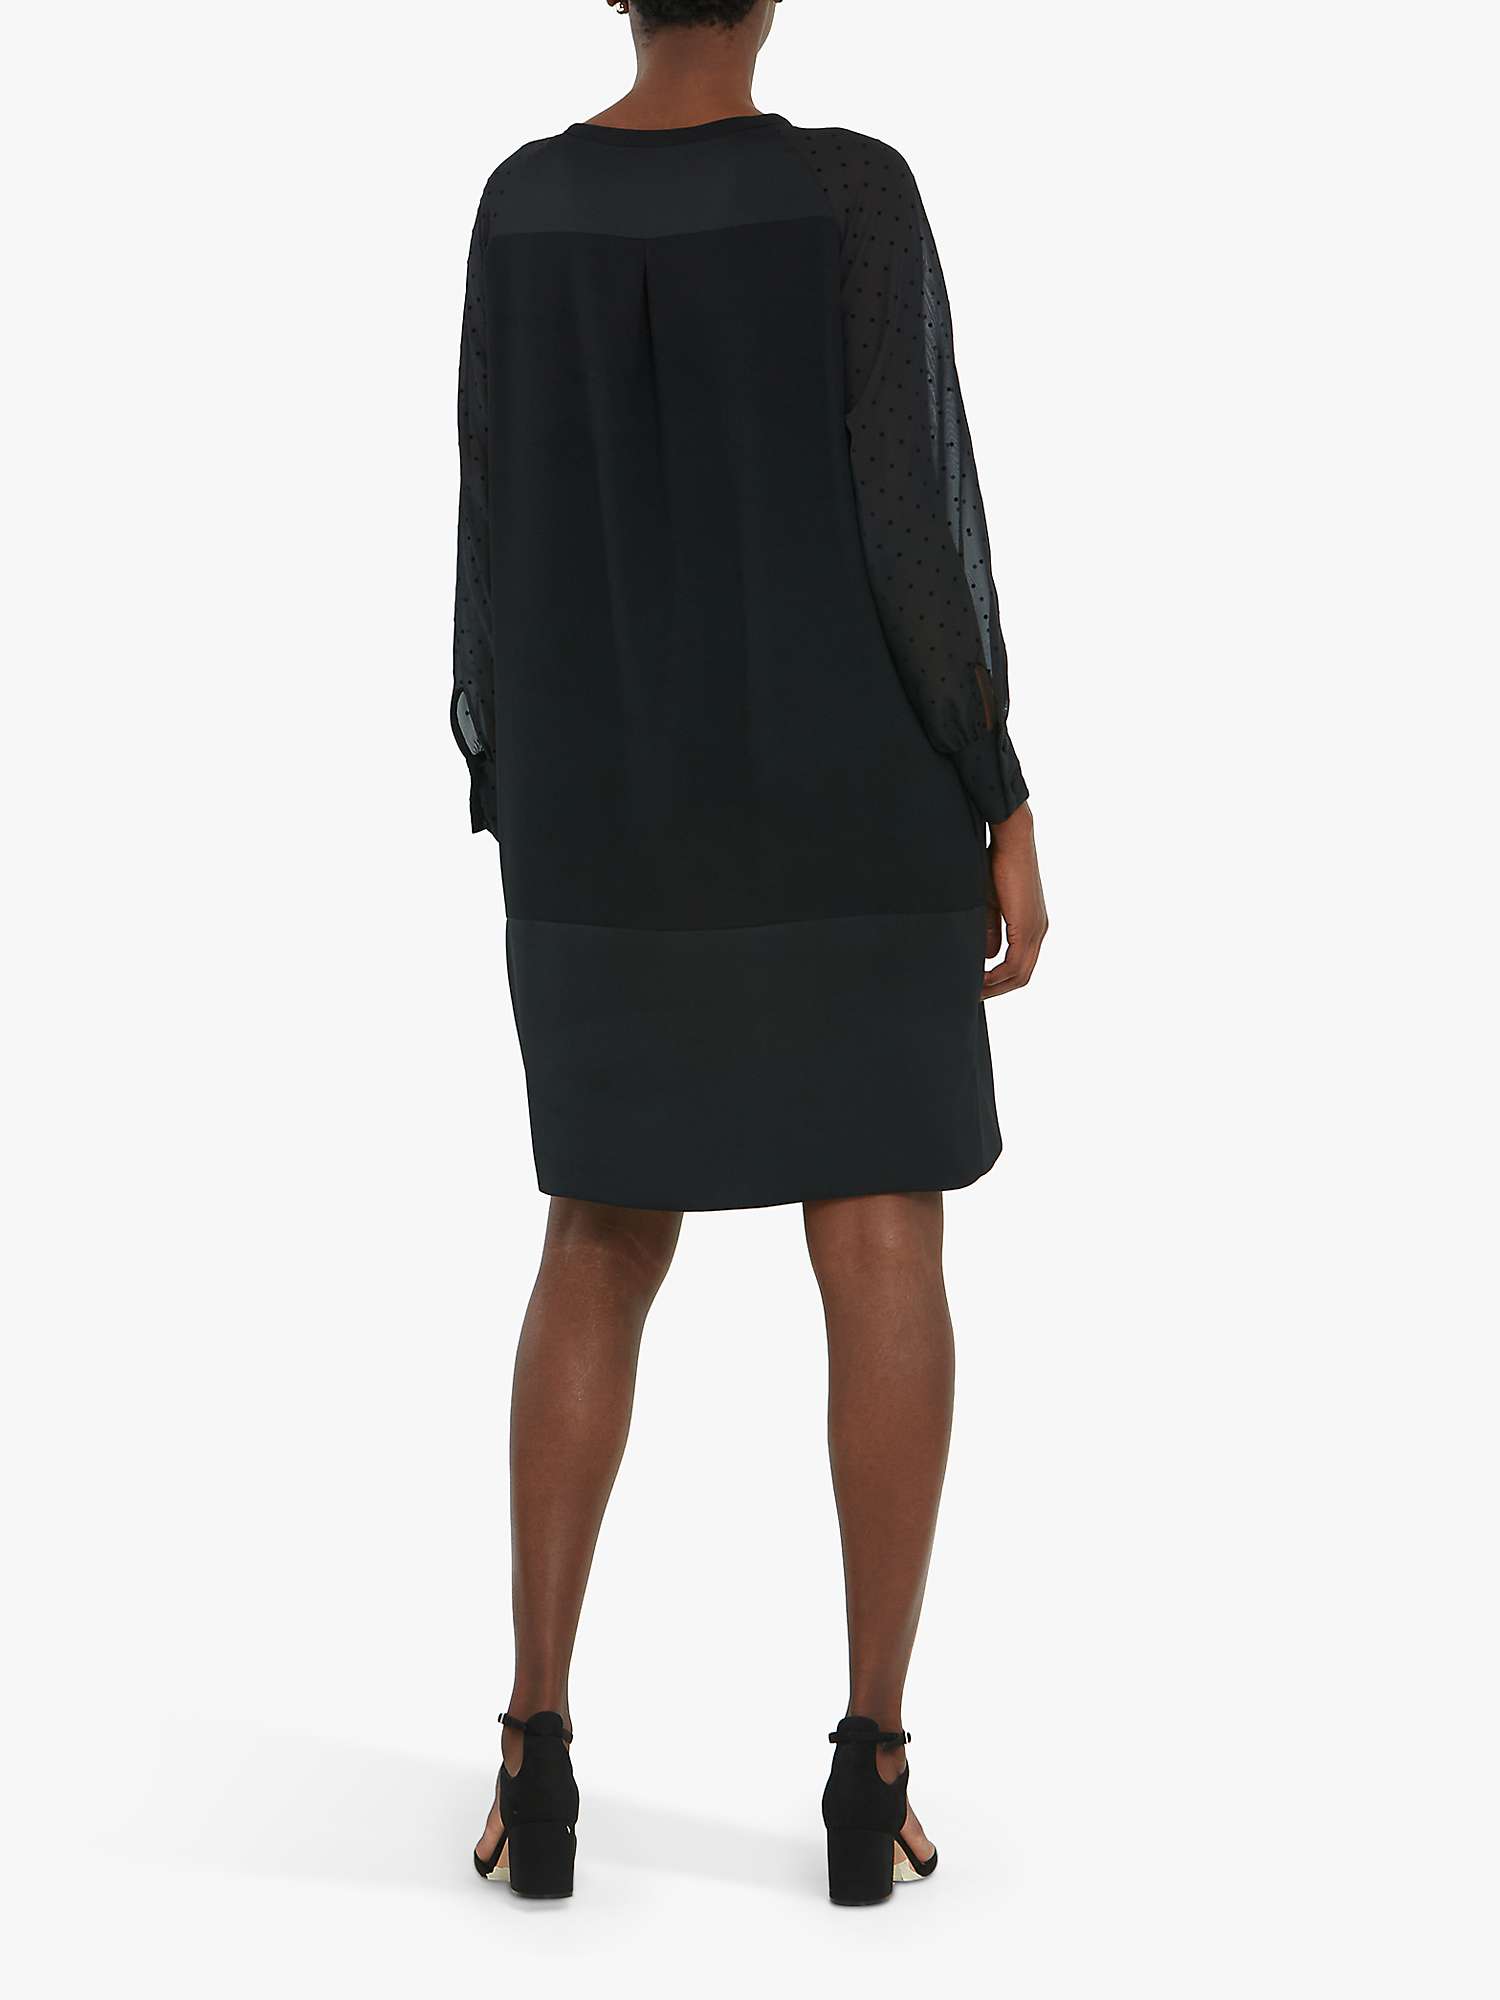 Buy Helen McAlinden Sarah Shift Dress, Black Online at johnlewis.com